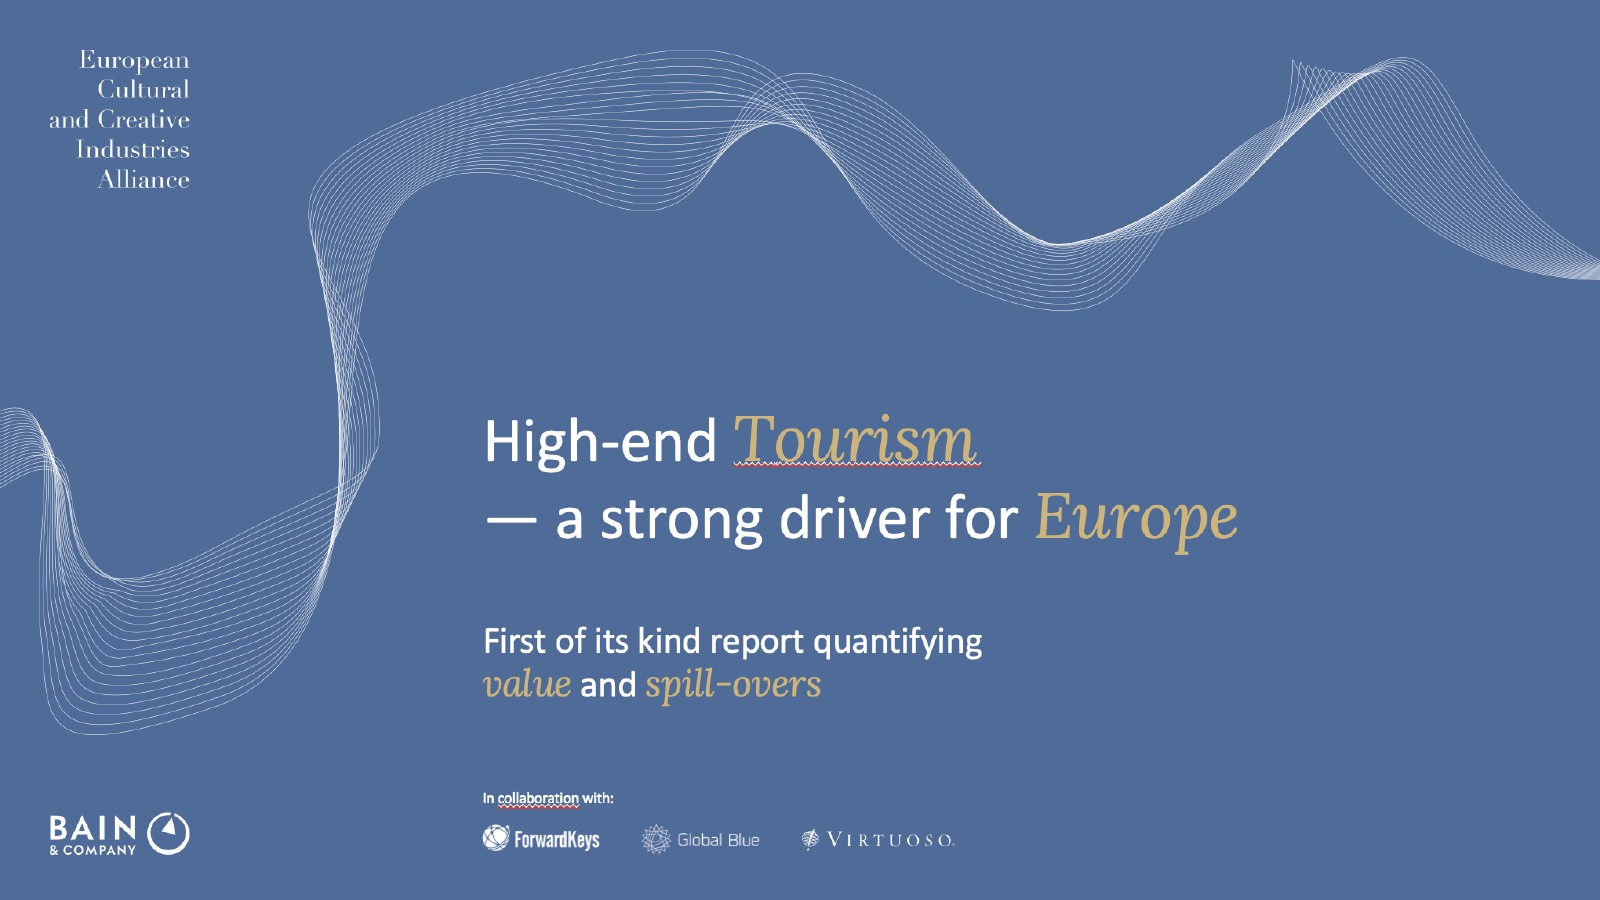 欧洲文化和创意行业联盟：欧洲高端旅游报告